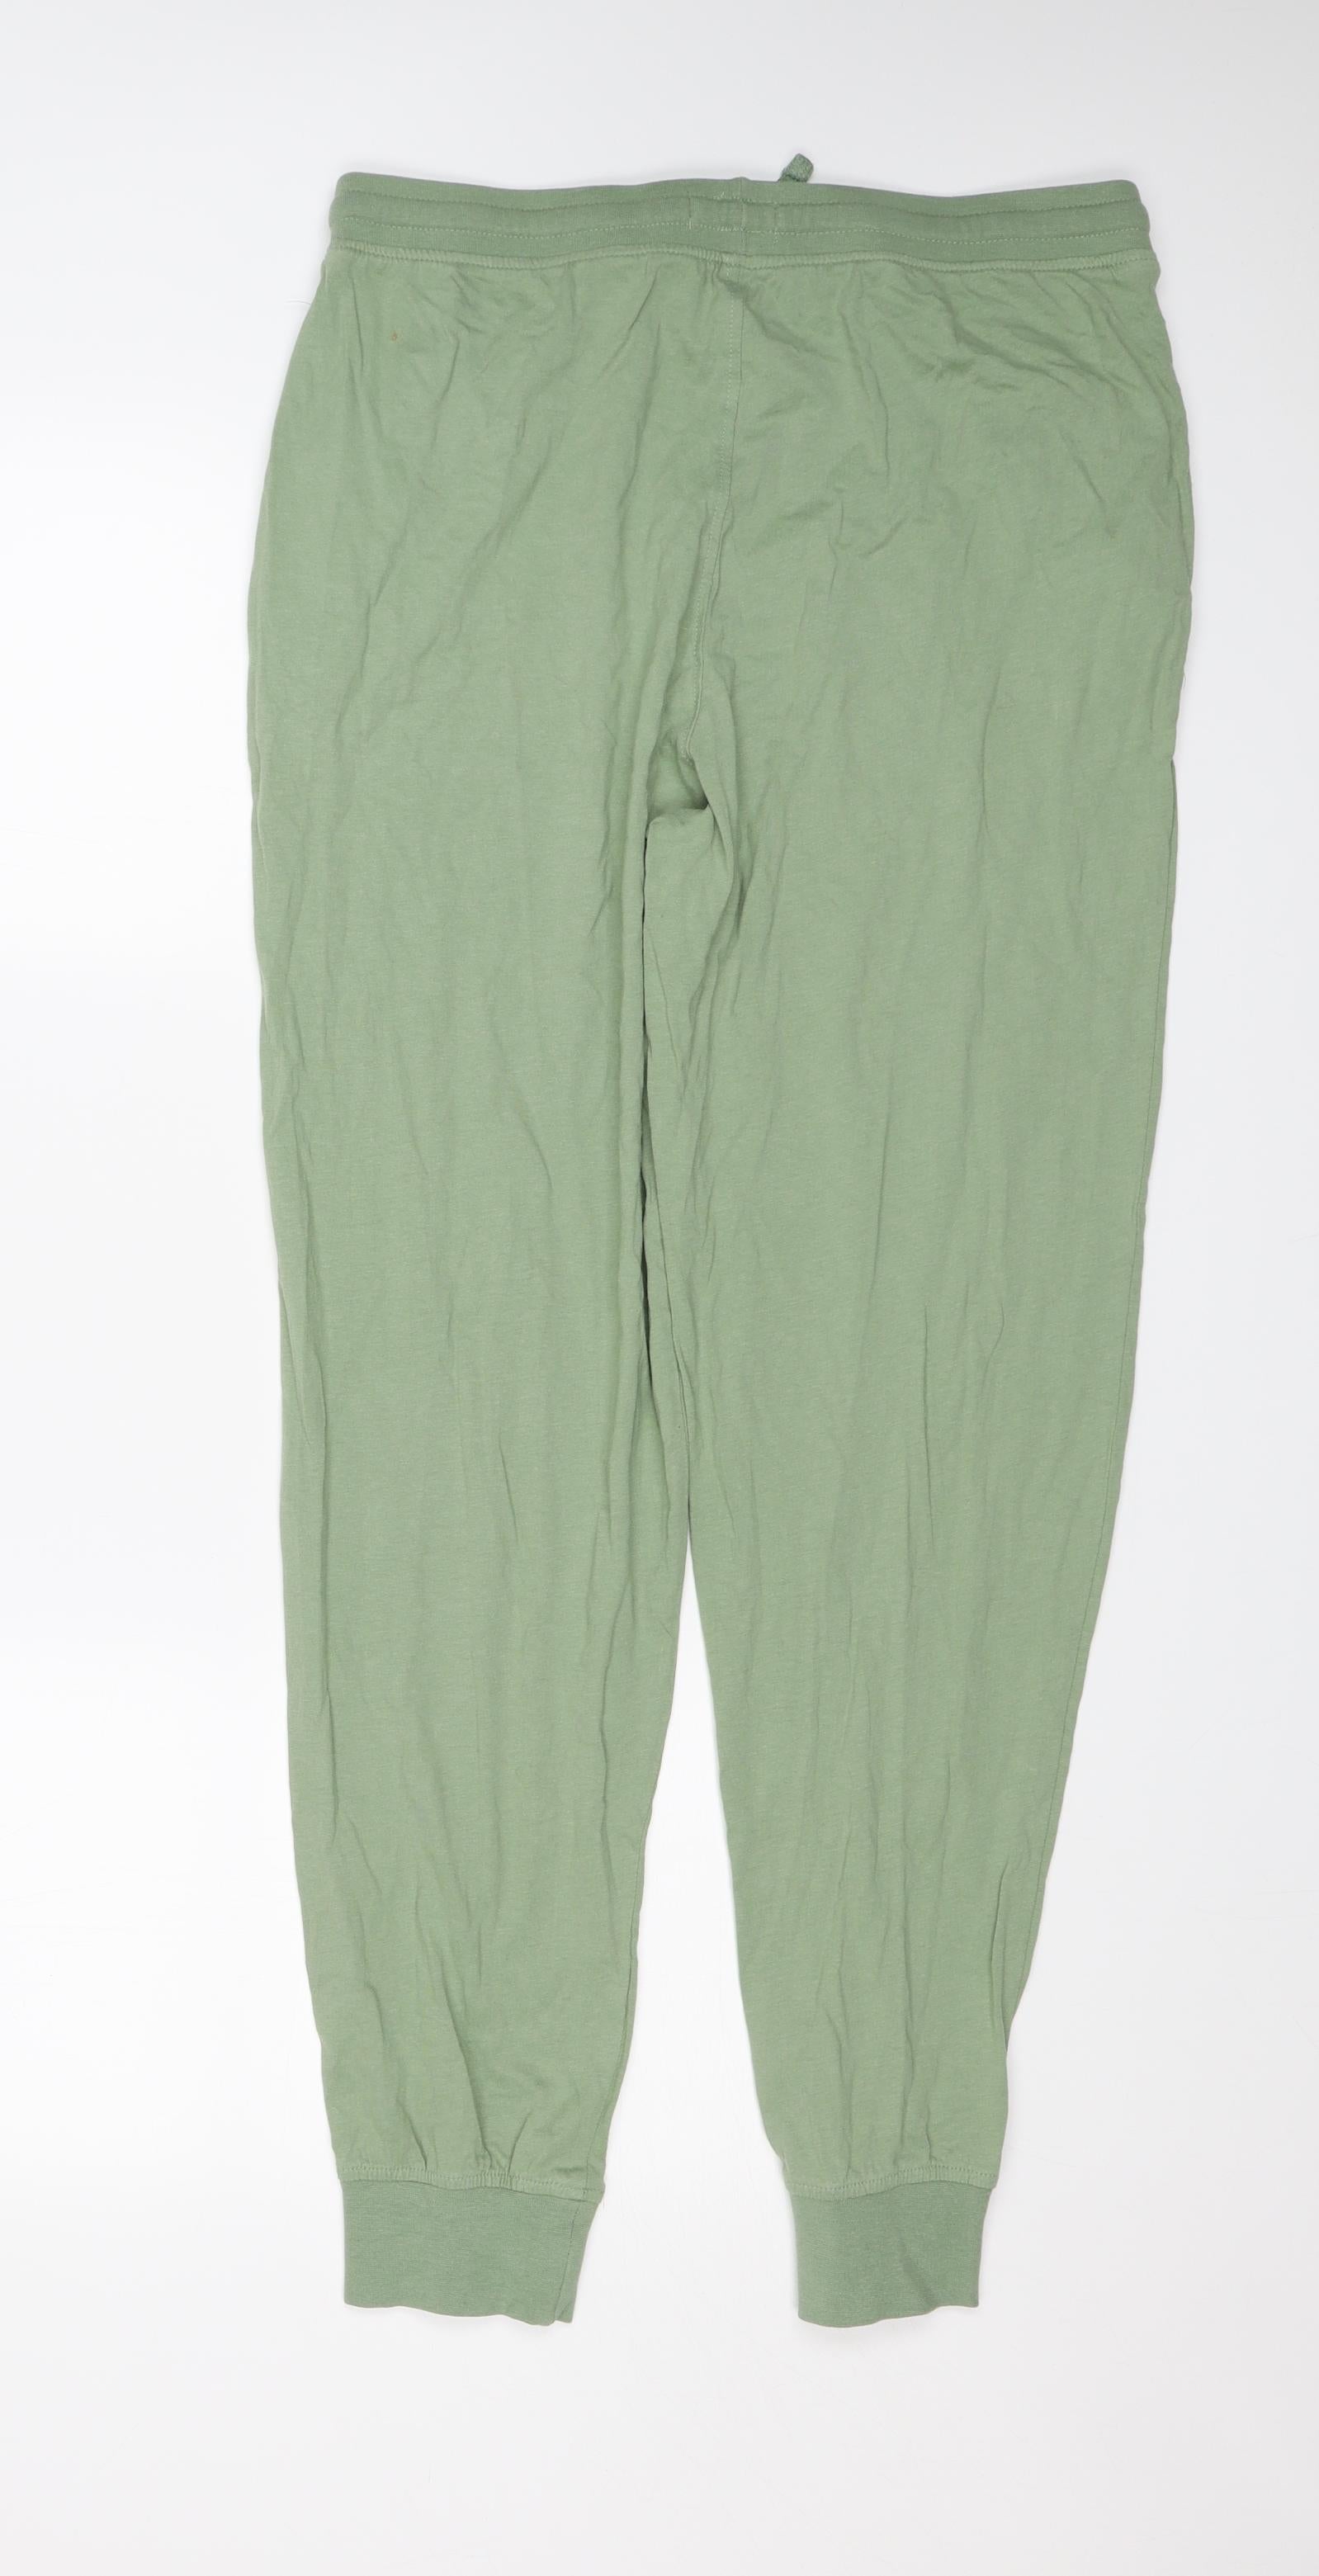 Primark Womens Grey Sweatpants Trousers Size XL L29 in – Preworn Ltd